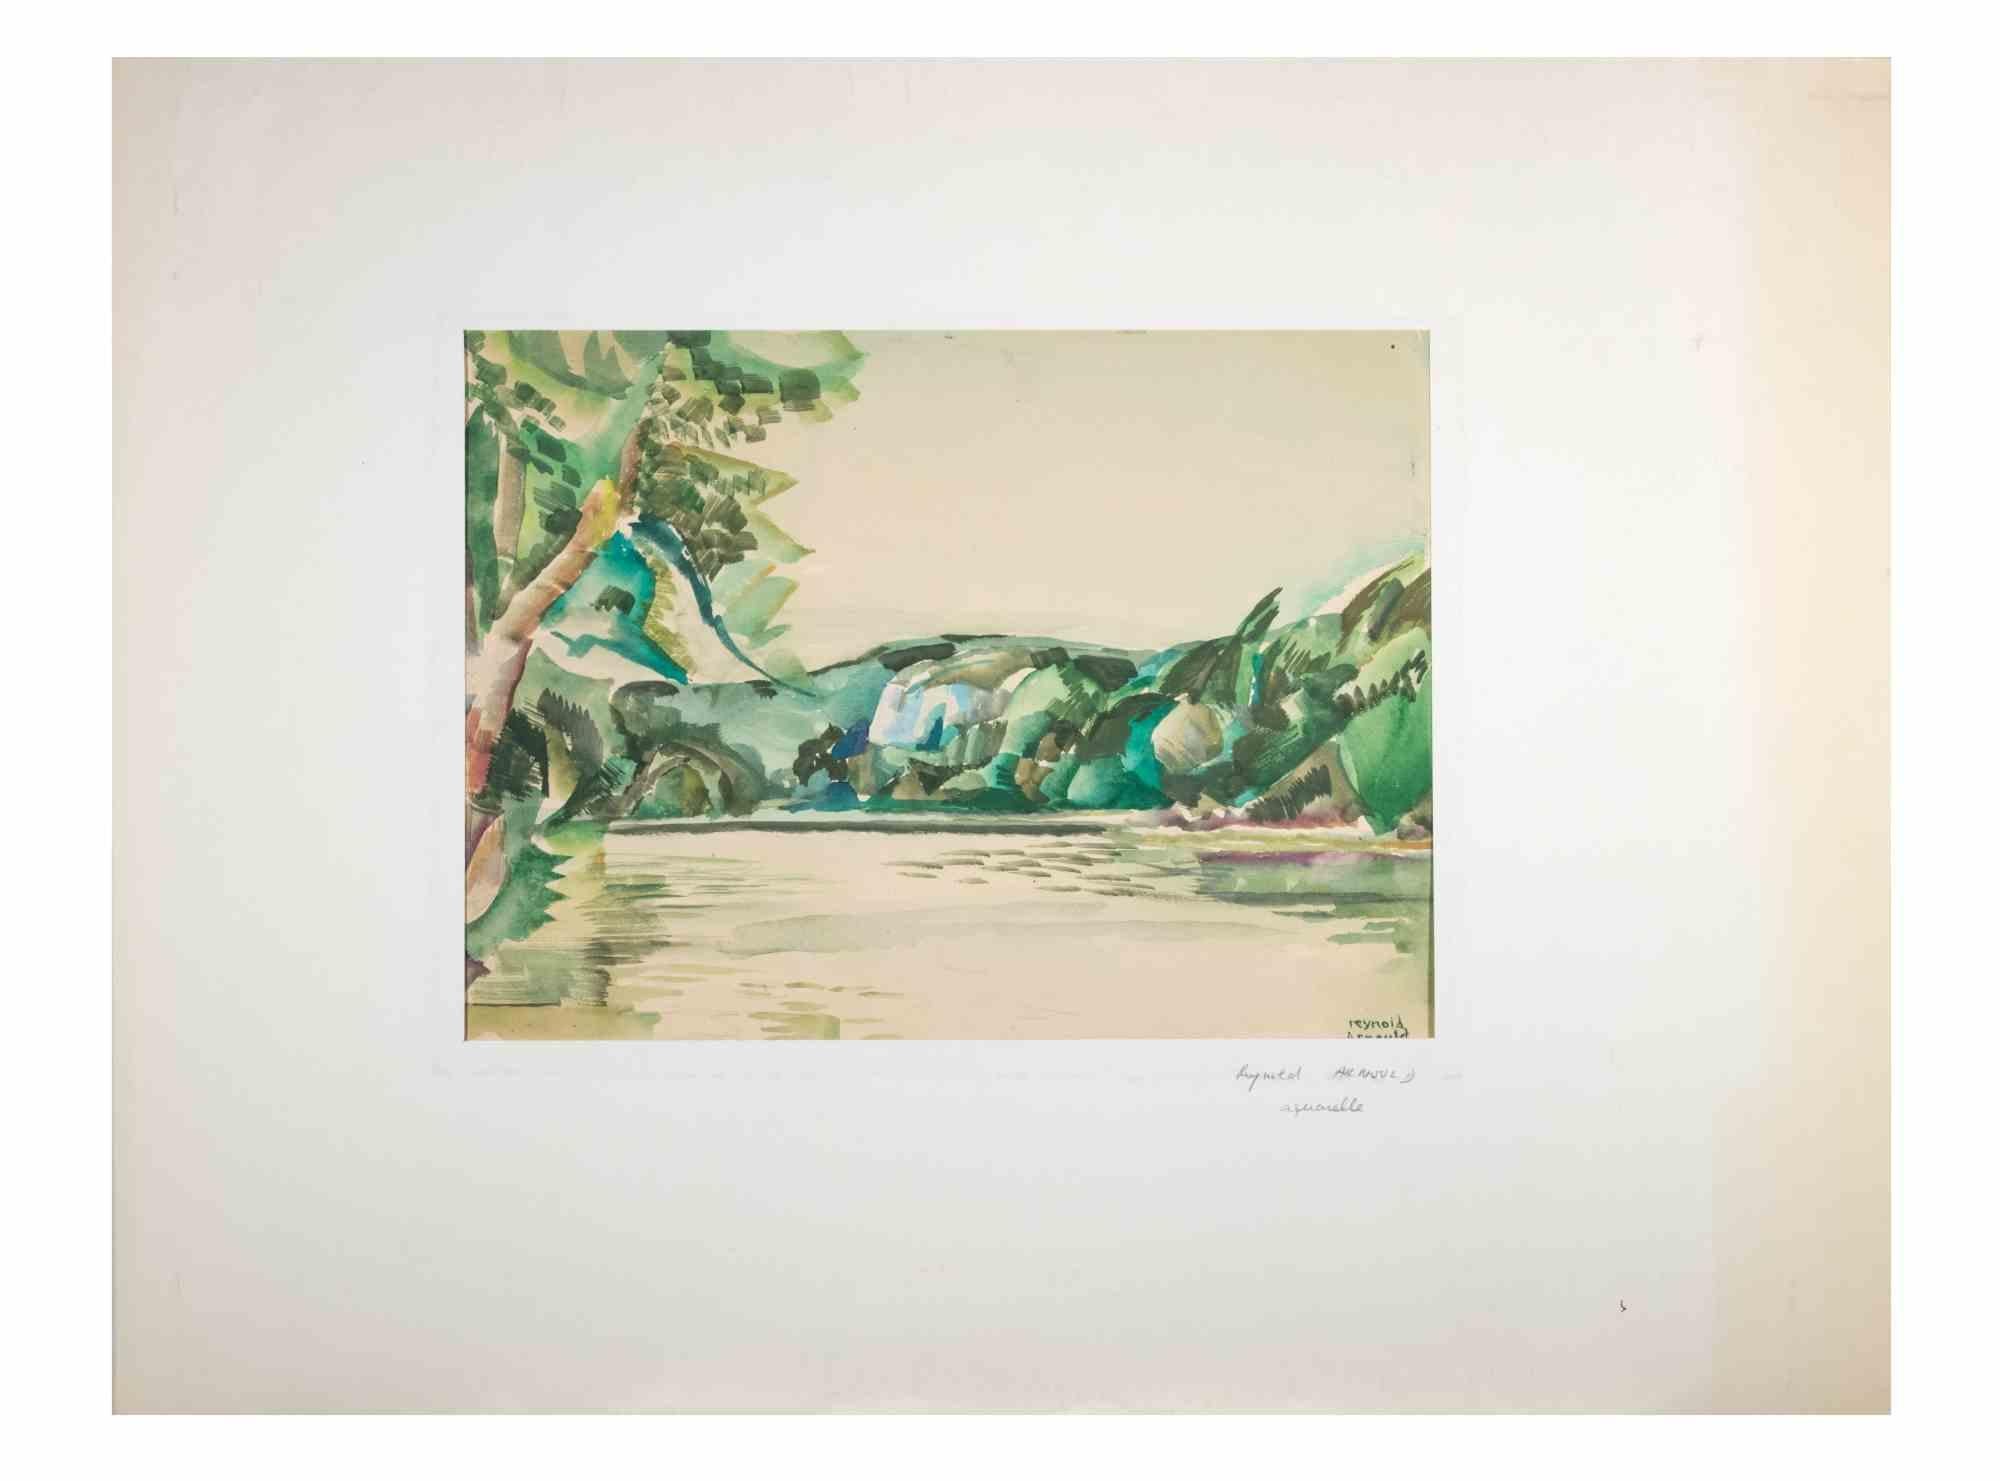 Landschaft ist ein Aquarell von Reynold Arnould  (Le Havre 1919 - Parigi 1980).

Guter Zustand, einschließlich eines Passepartouts aus weißem Karton (51x66 cm).

Handsigniert in der rechten unteren Ecke.

Reynold Arnould wurde 1919 in Le Havre,